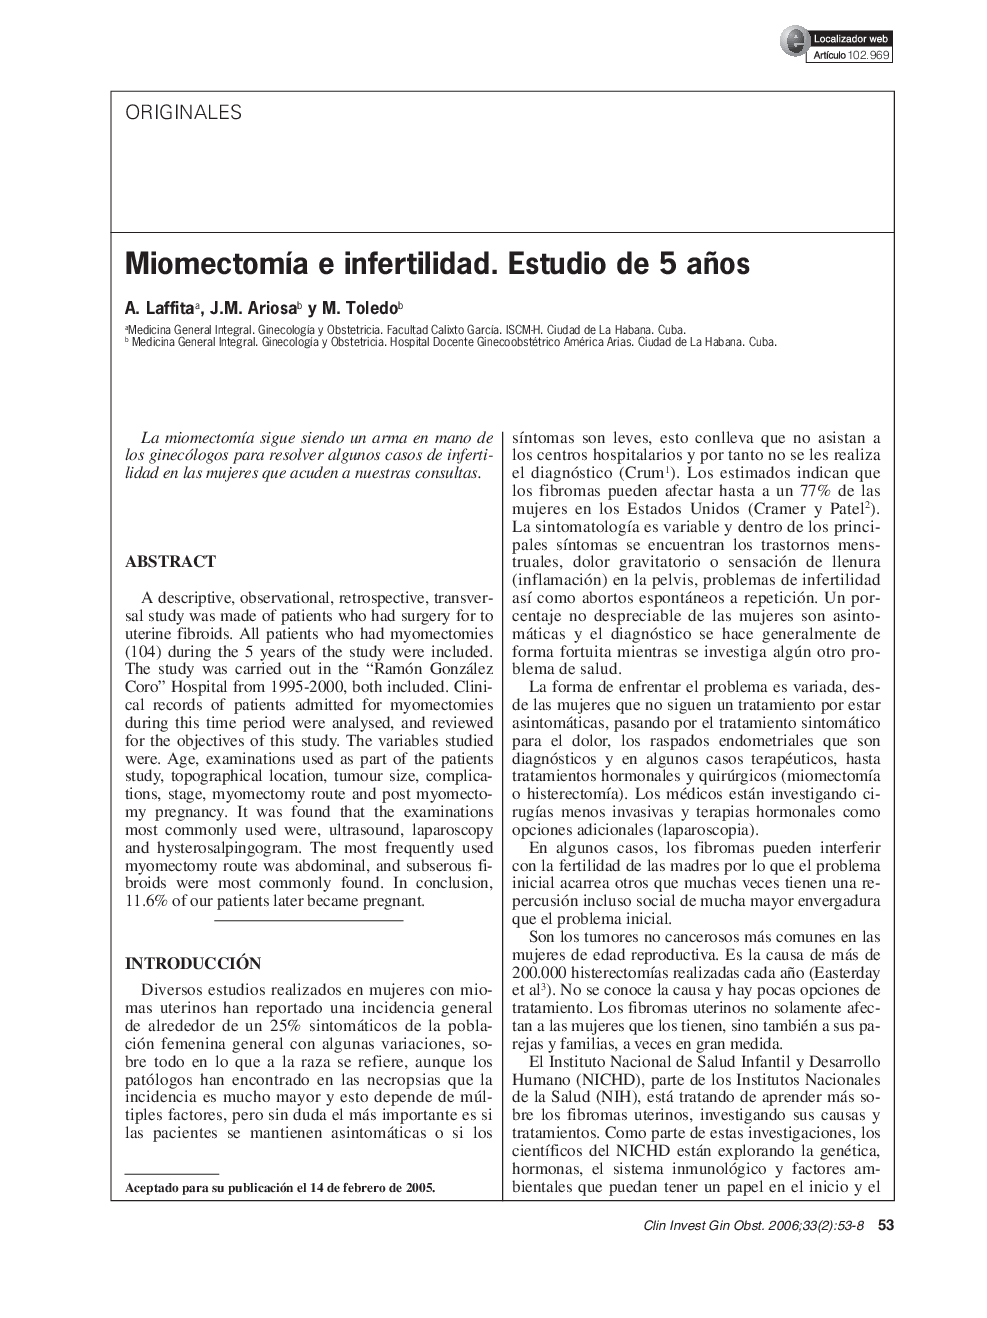 MiomectomÃ­a e infertilidad. Estudio de 5 años